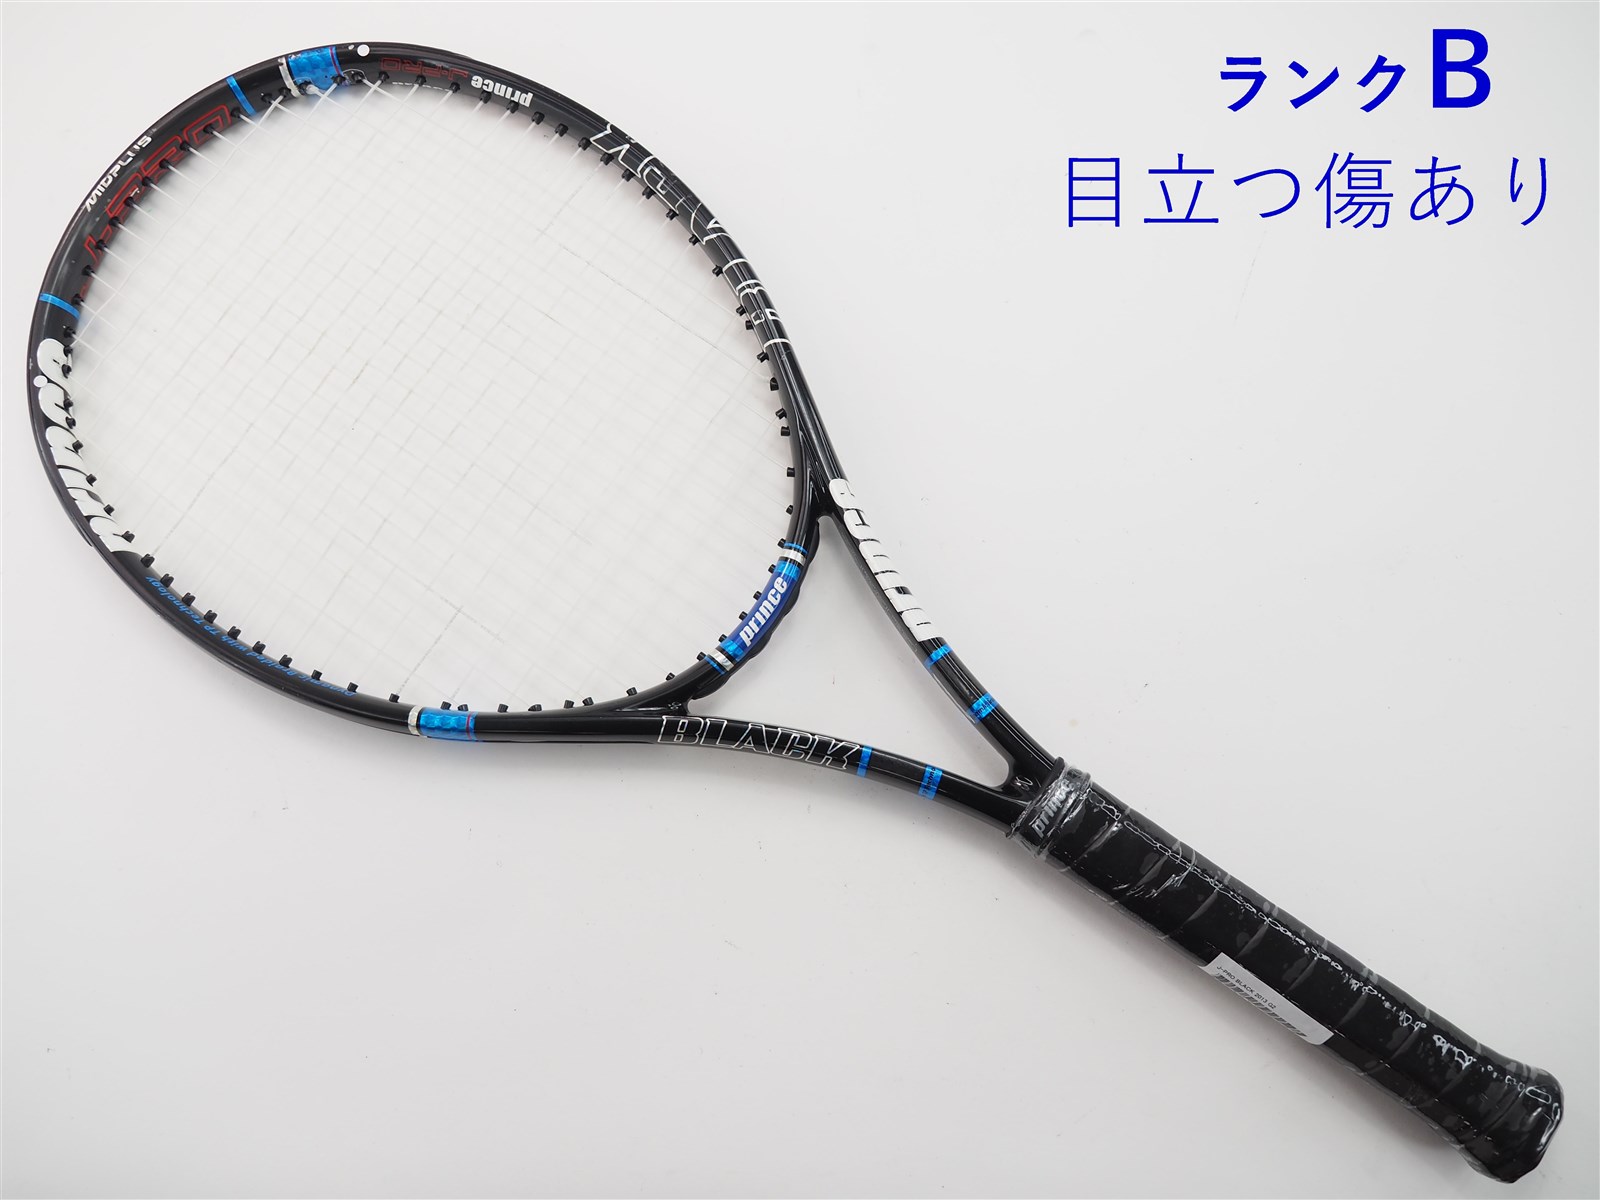 専用 テニスラケット バボラ ピュアドライブ チーム G2 - ラケット(硬式用)